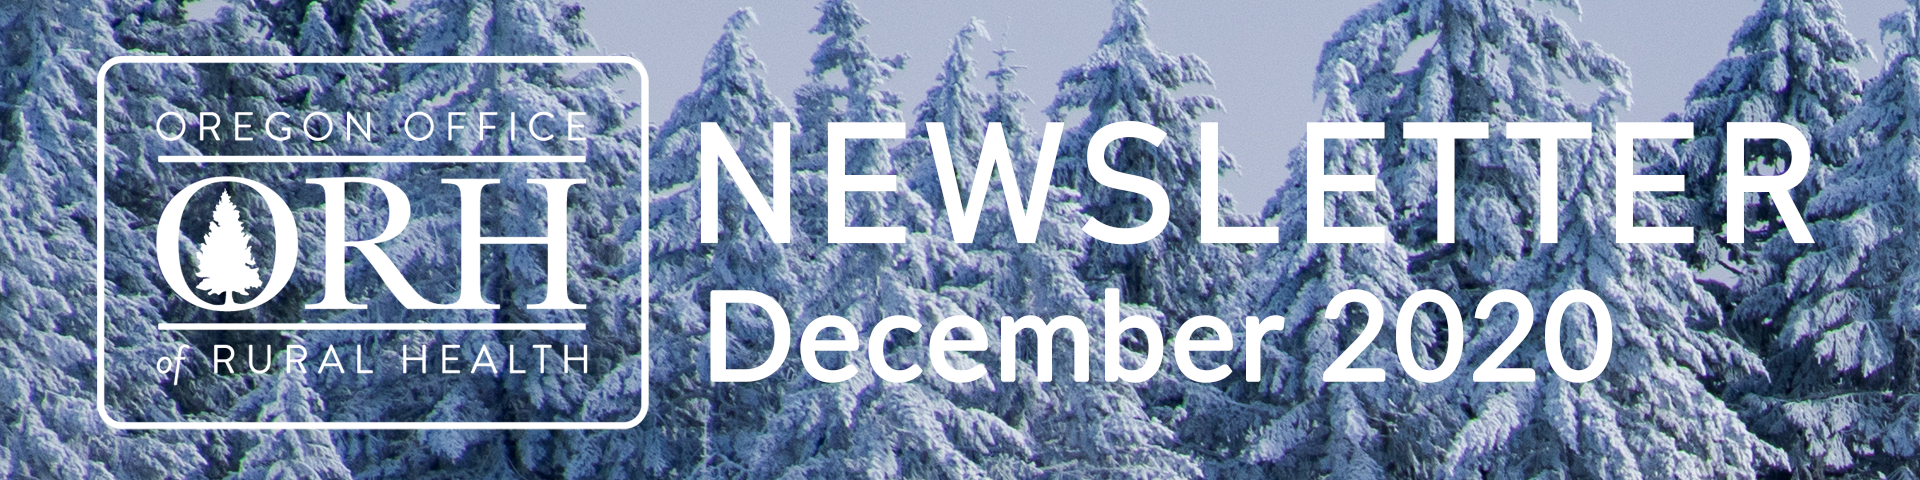 December 2020 Newsletter Banner